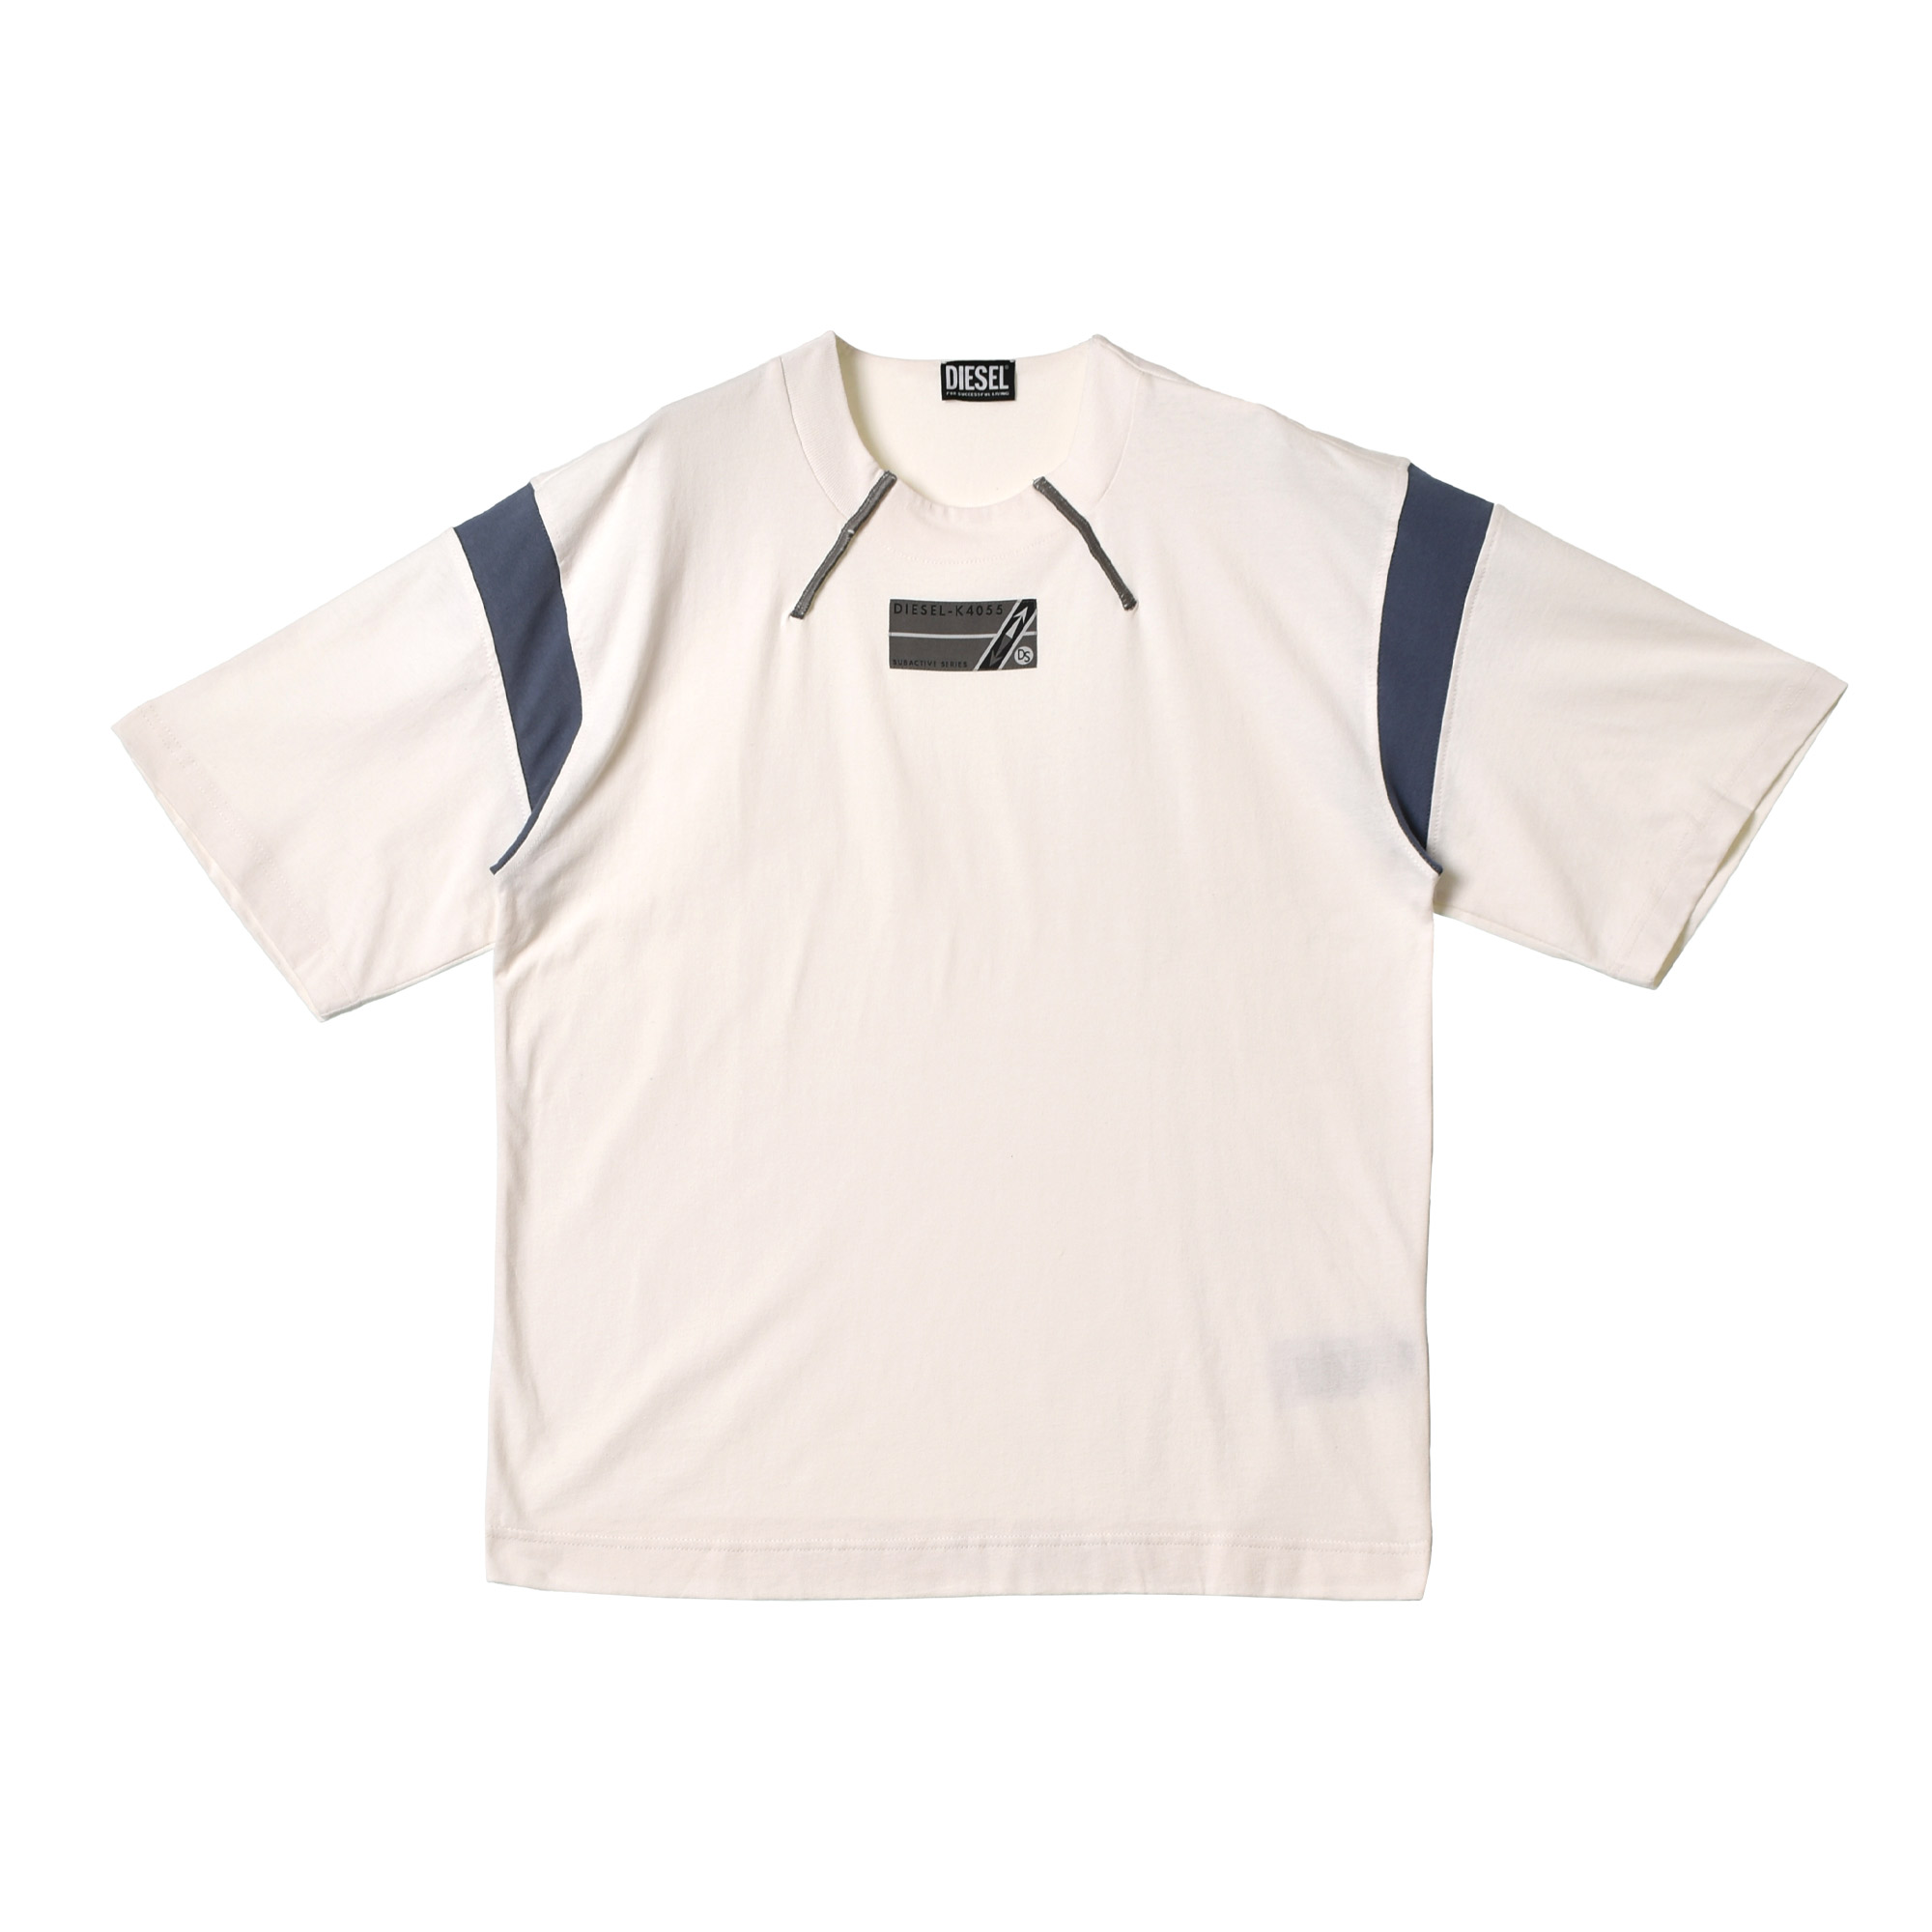 ディーゼル 半袖Tシャツ メンズ T-BEST DIESEL A085680NFAE ホワイト 白 ...